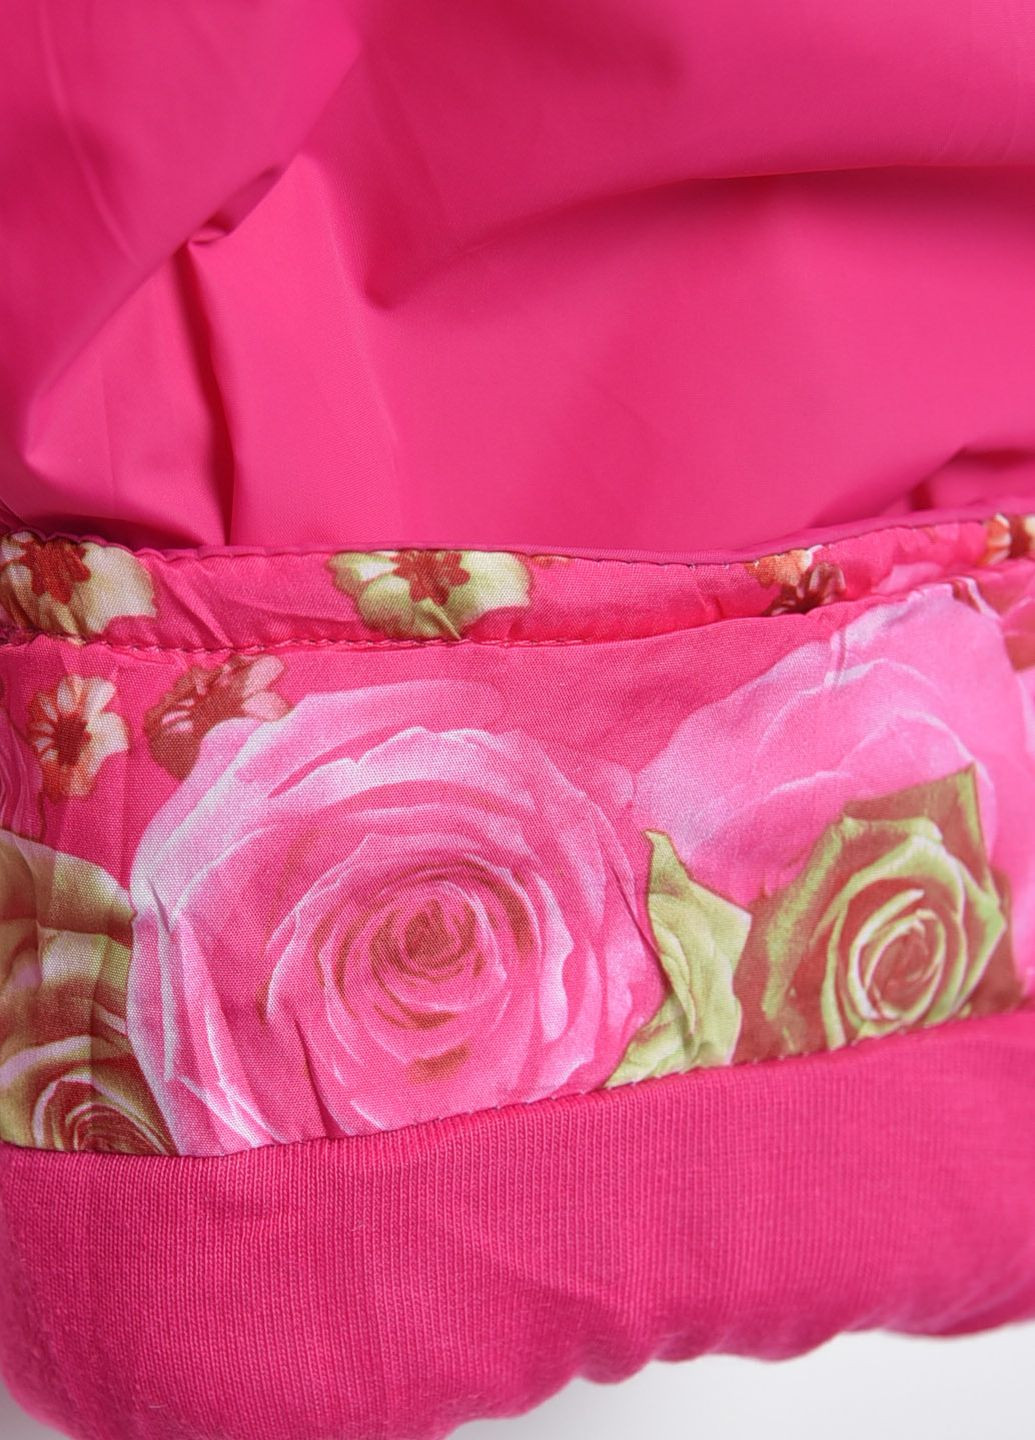 Розовая зимняя куртка и полукомбинезон детский для девочки еврозима розового цвета Let's Shop